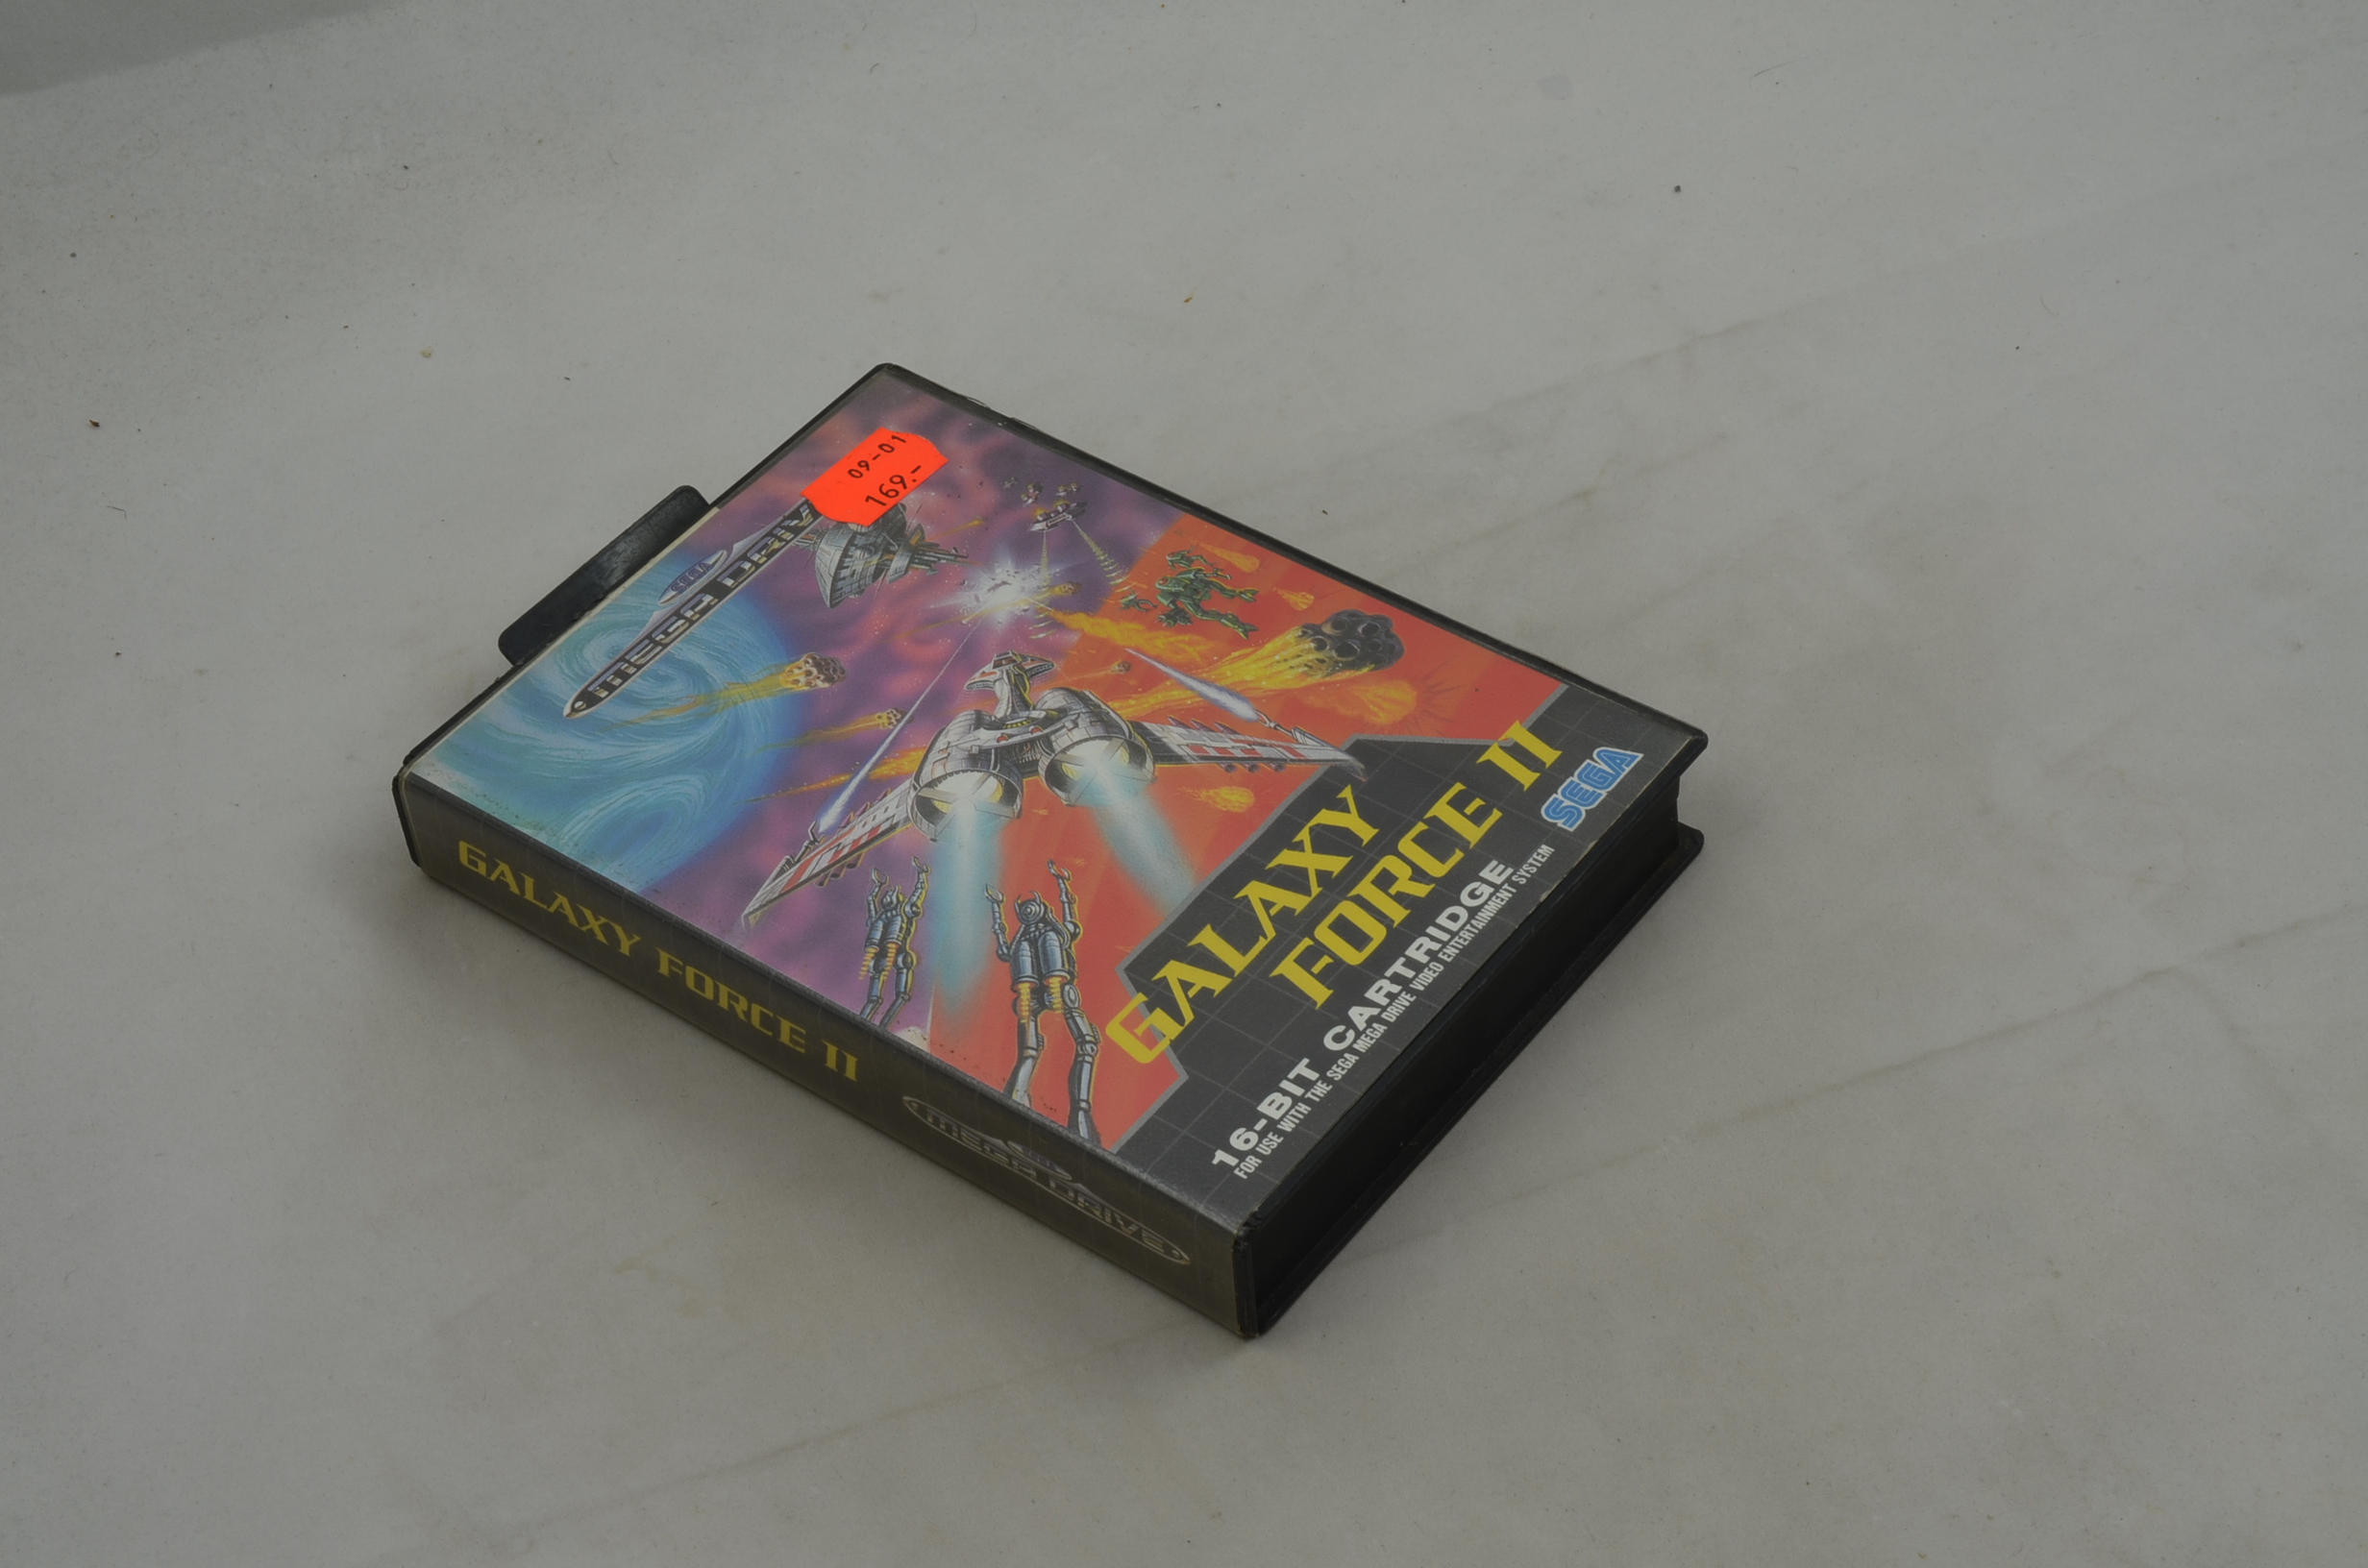 Produktbild von Galaxy Force II Sega Mega Drive Spiel CIB